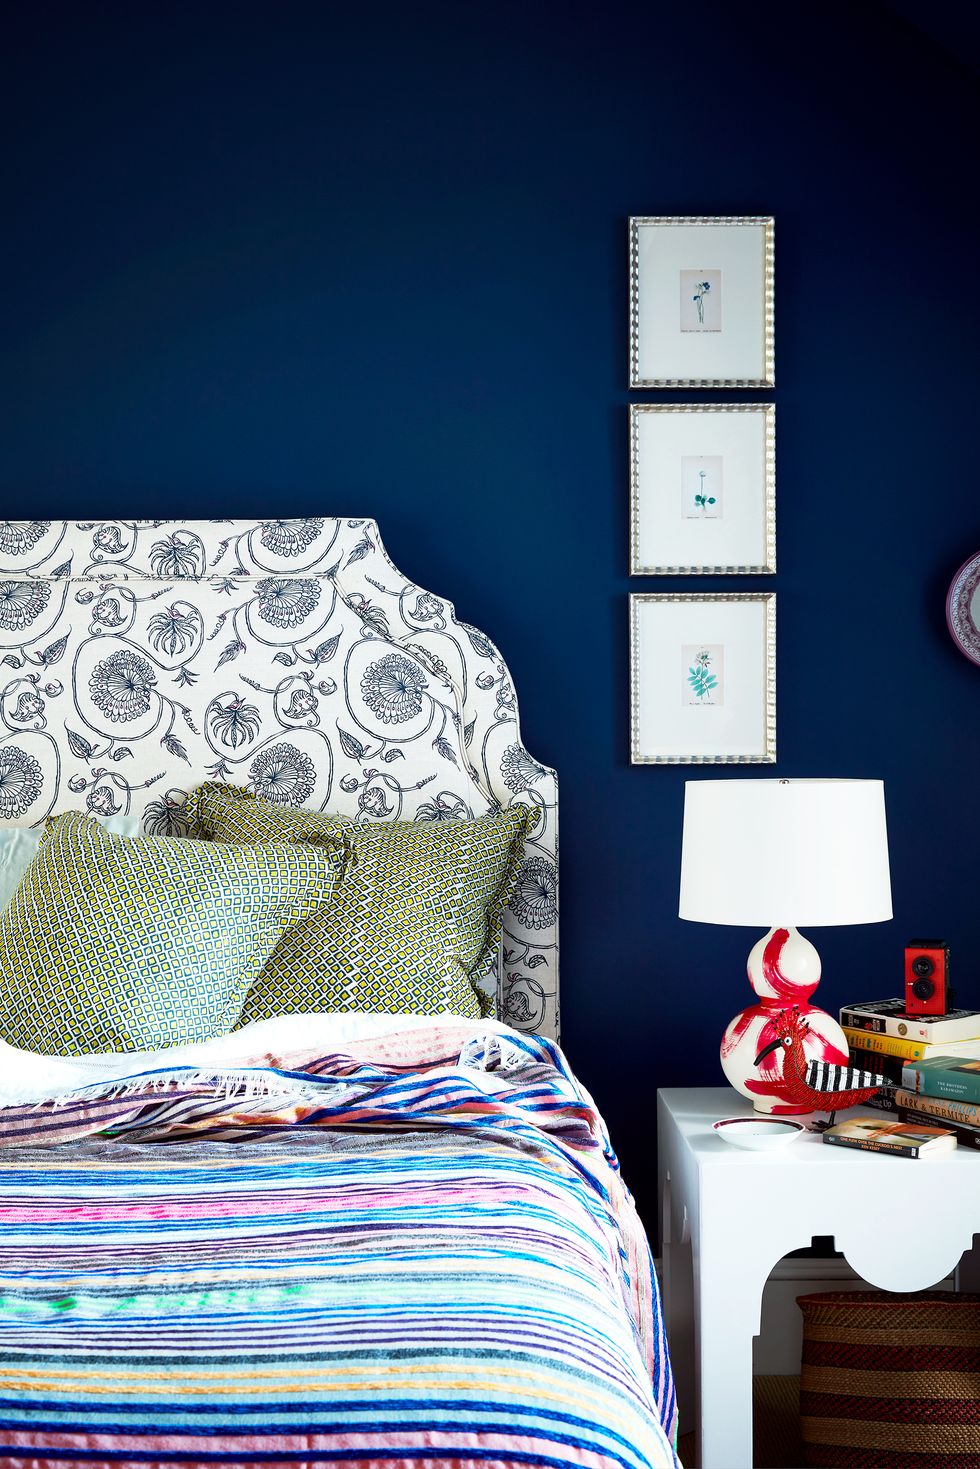 tường đầu giường sơn màu xanh navy đậm